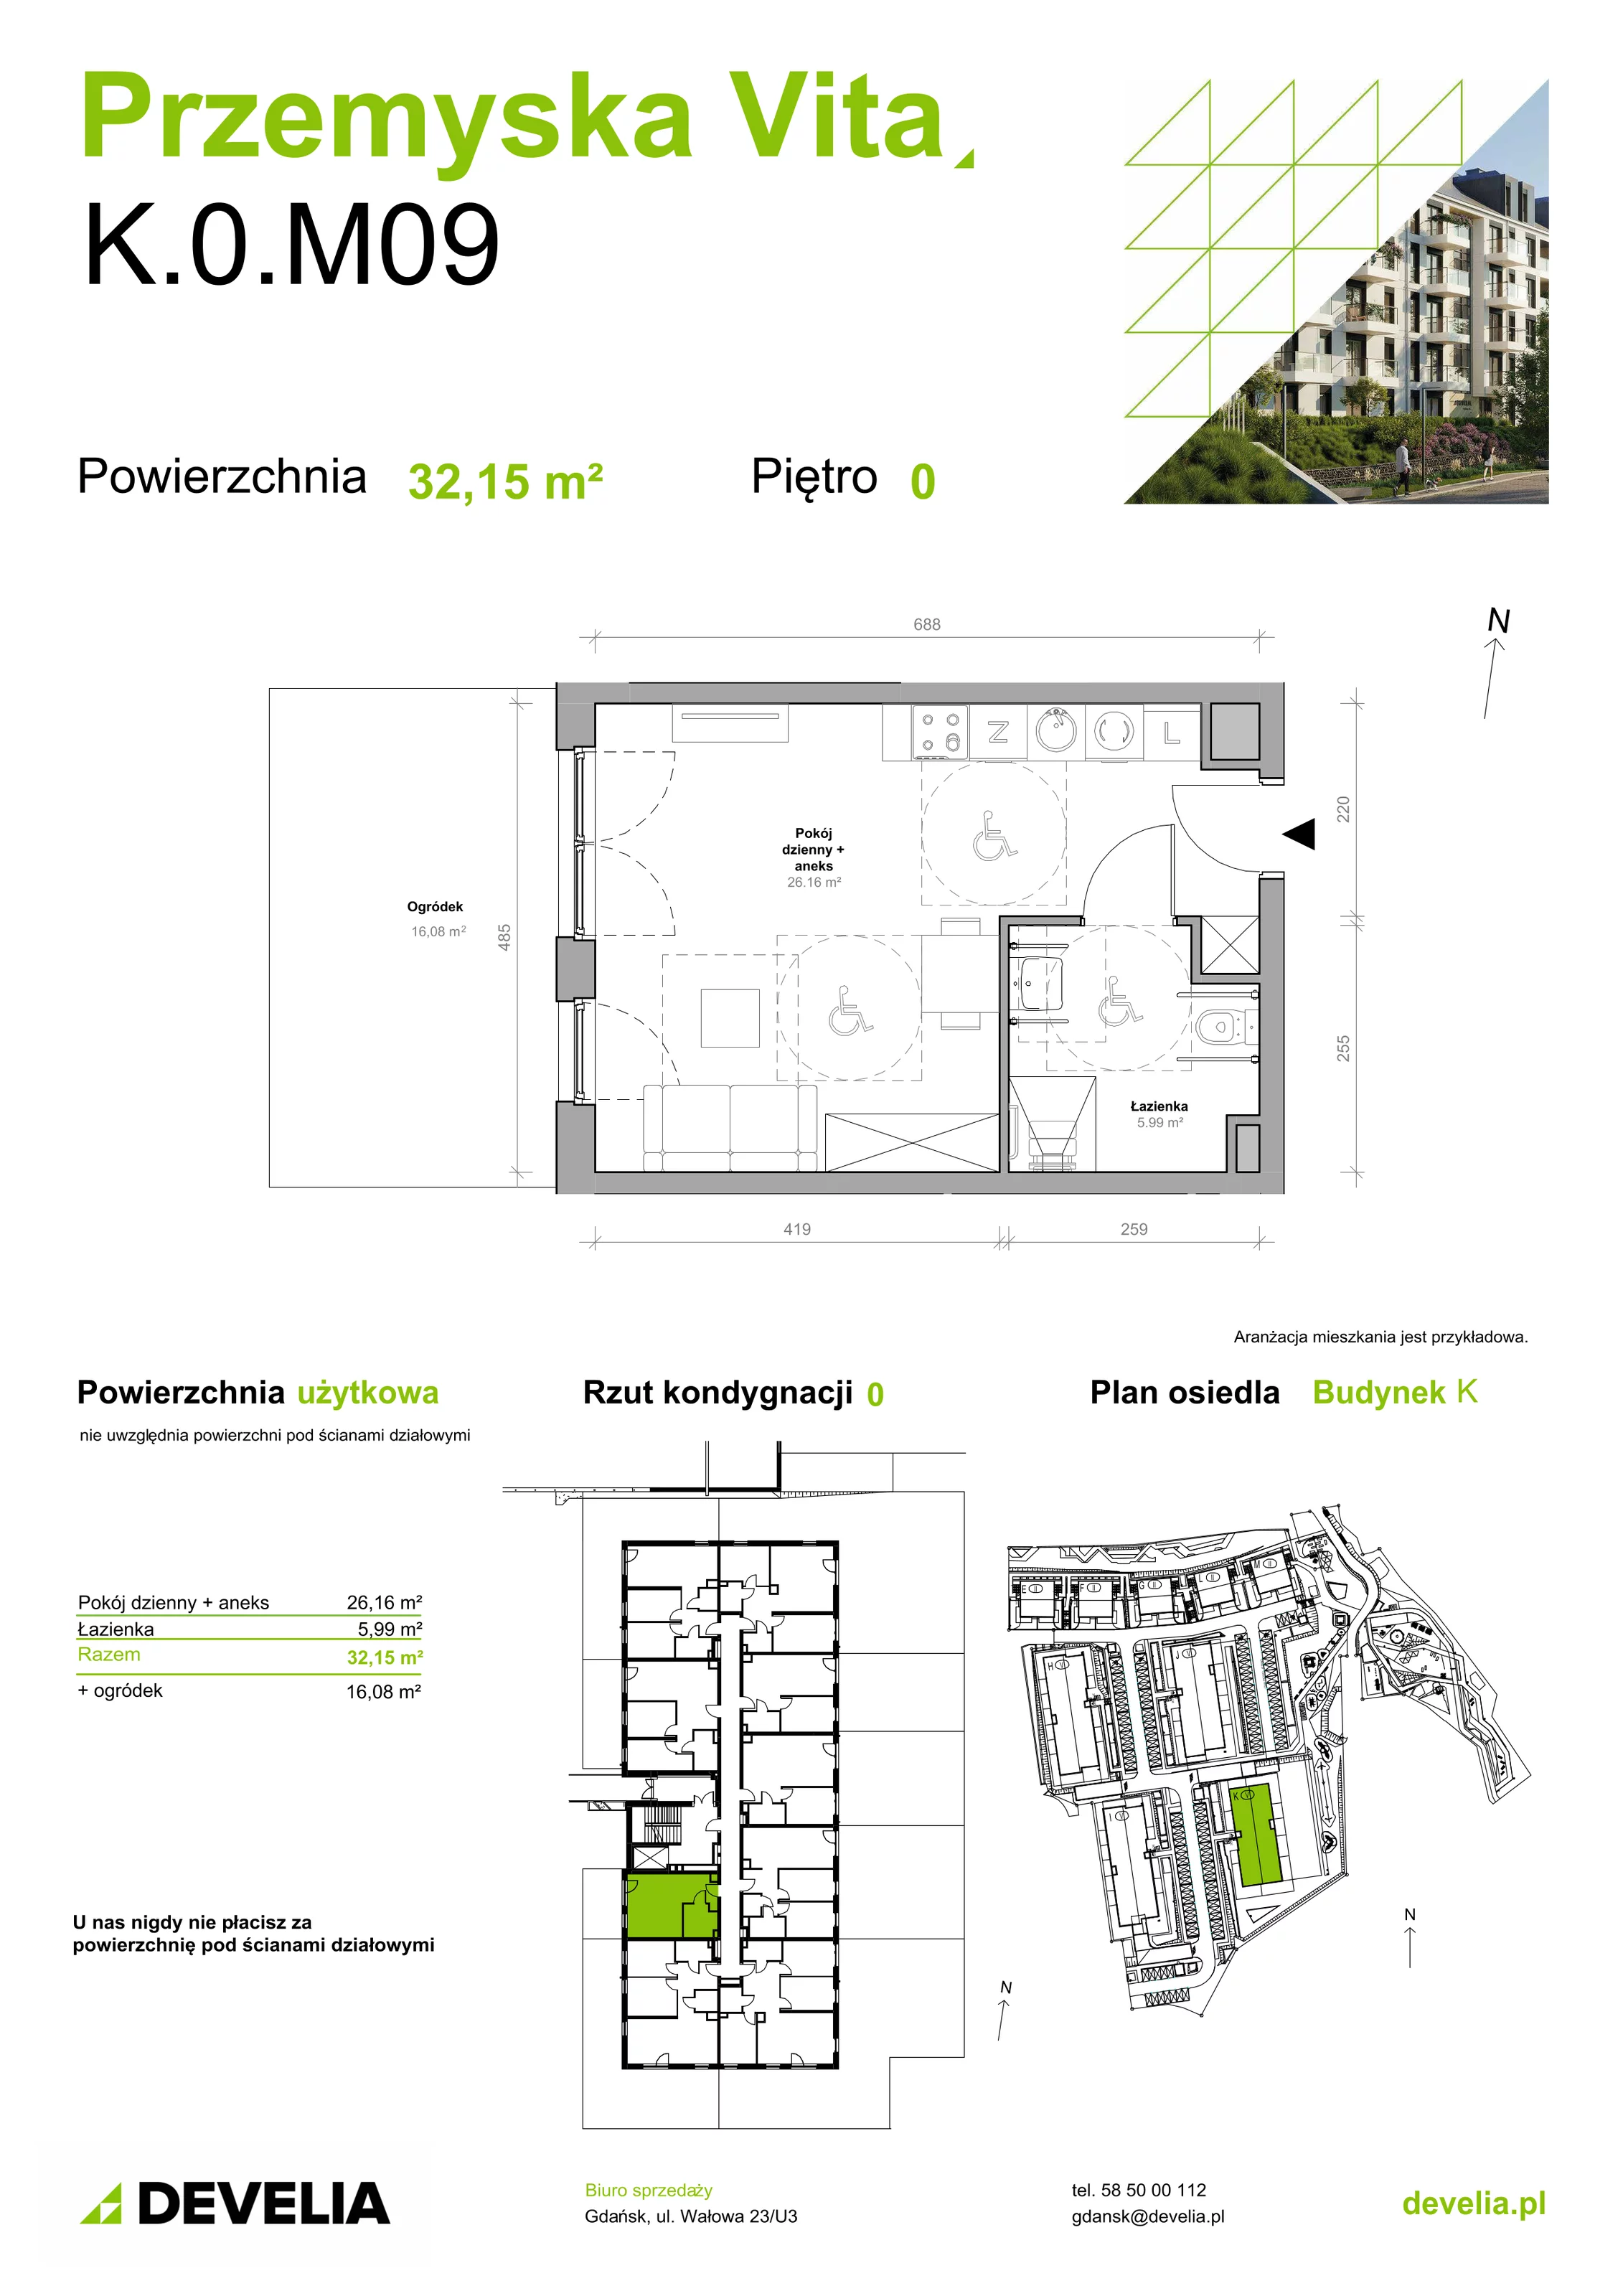 Mieszkanie 32,15 m², parter, oferta nr K.0.M09, Przemyska Vita, Gdańsk, Ujeścisko-Łostowice, Ujeścisko, ul. Przemyska 37